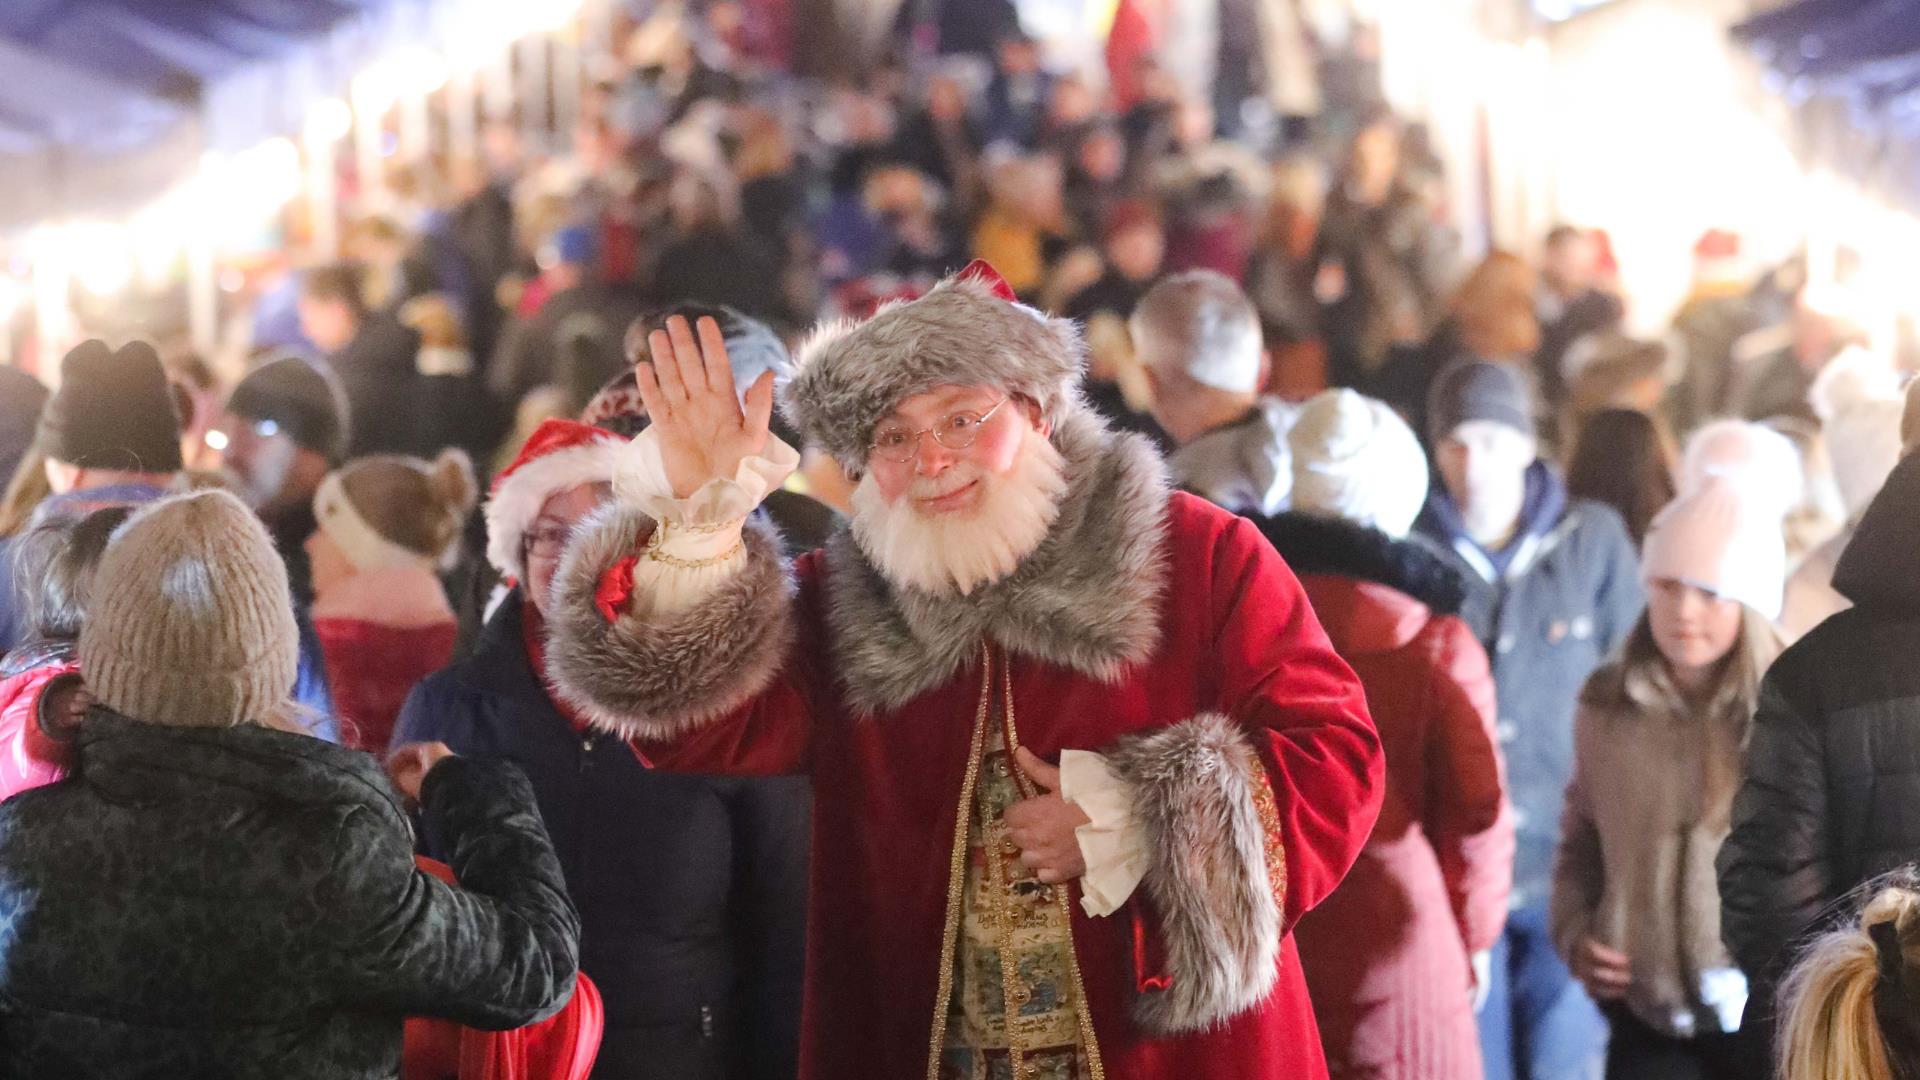 Santa waving with people shopping at Market behind him